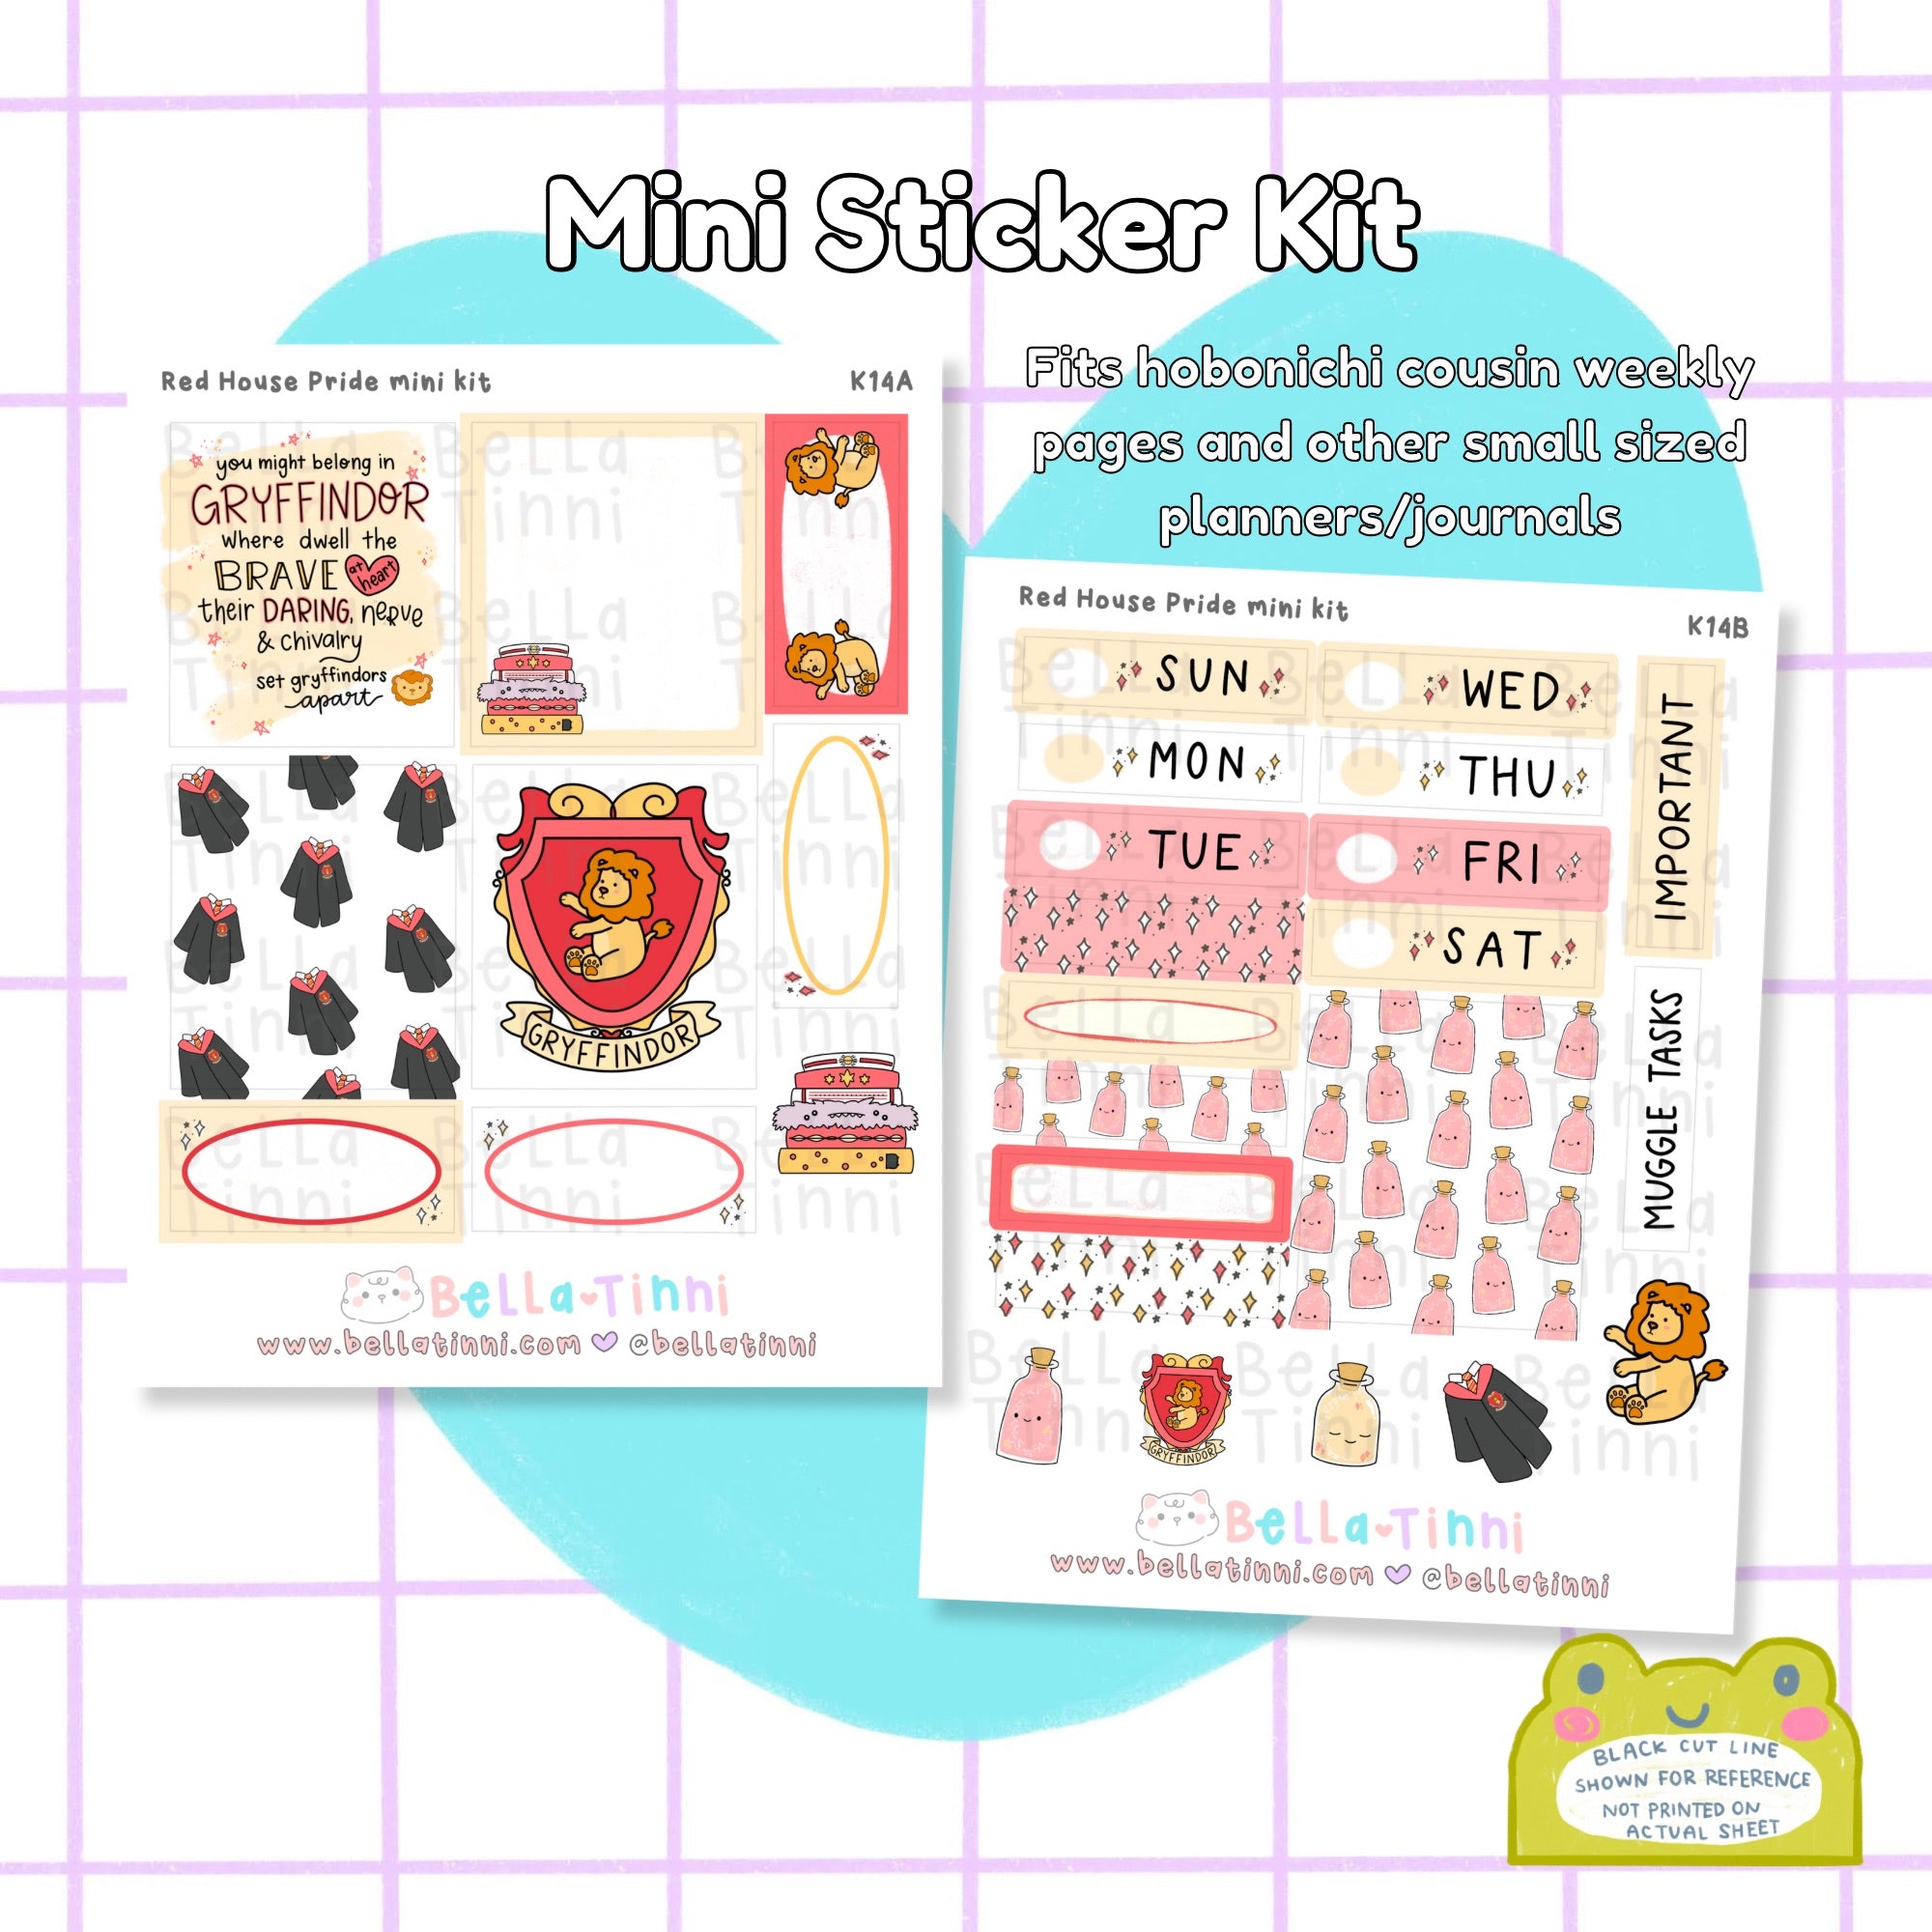 Red House Pride Mini Sticker Kit - K14